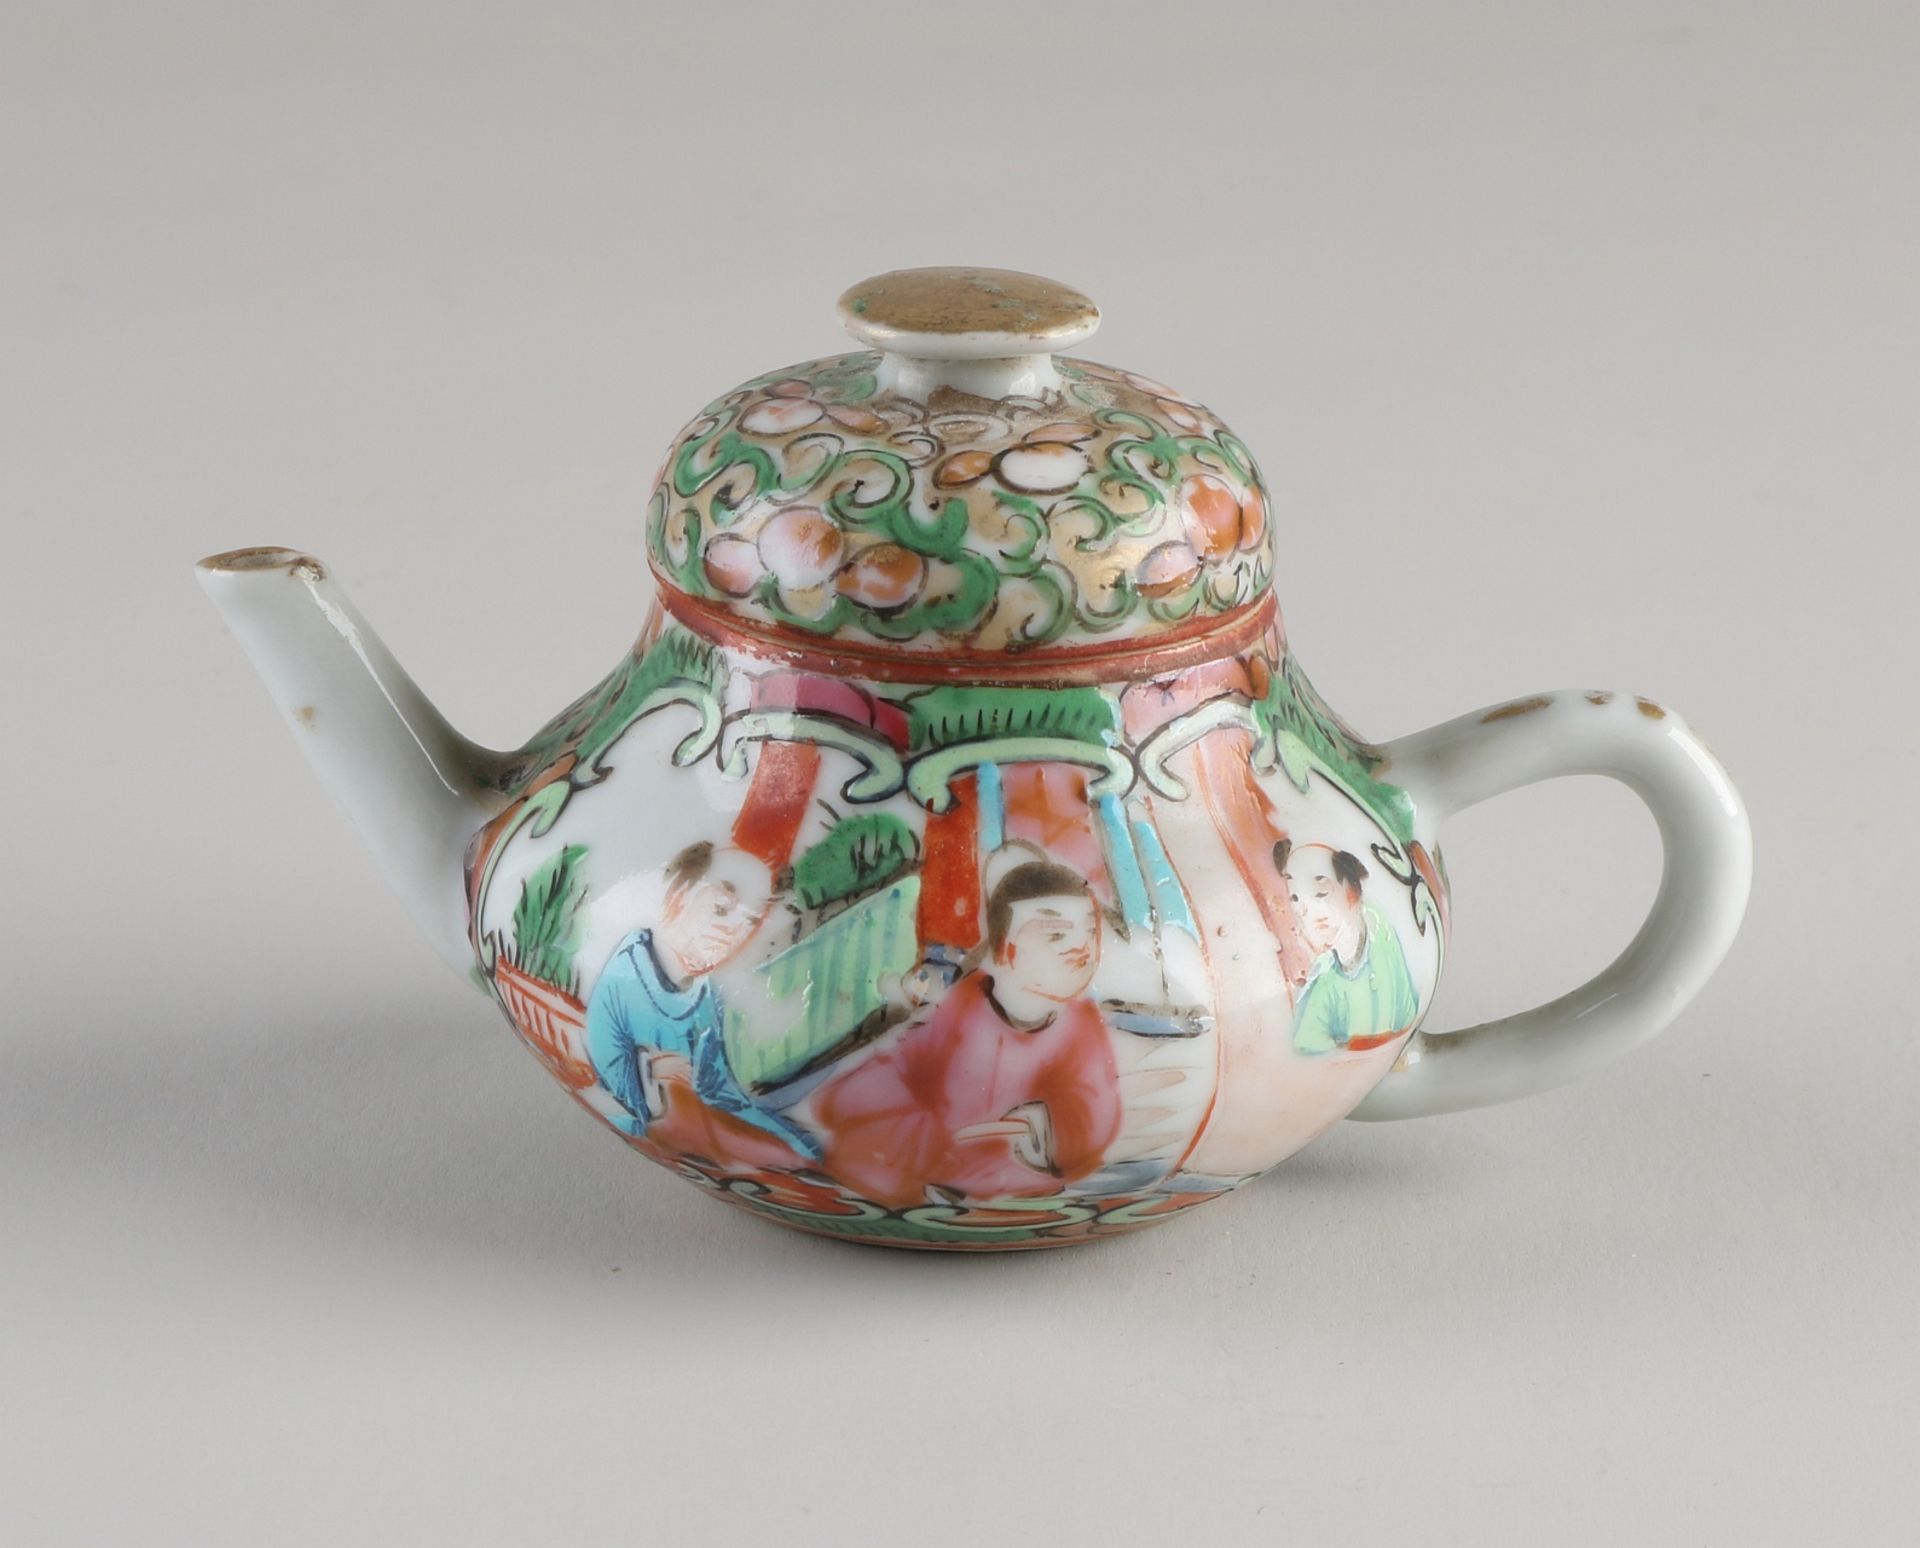 Kleine chinesische kantonesische Teekanne aus dem 19. Jahrhundert mit Figurendekoration. Größe: